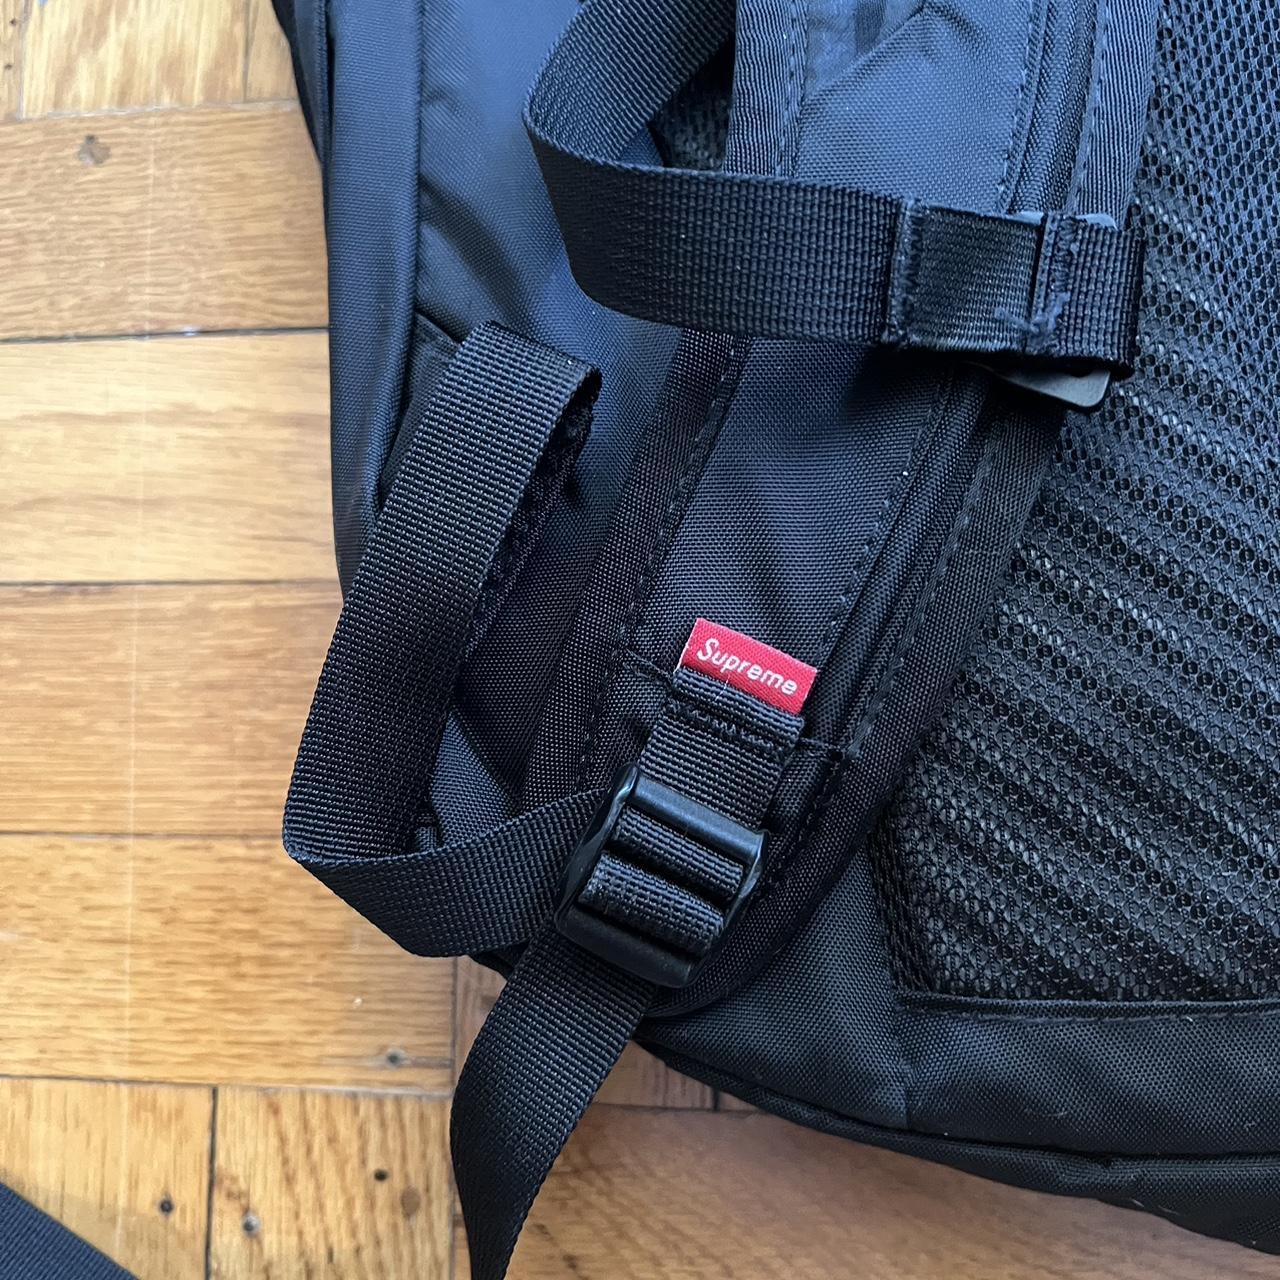 Supreme damier backpack Used but in excellent - Depop